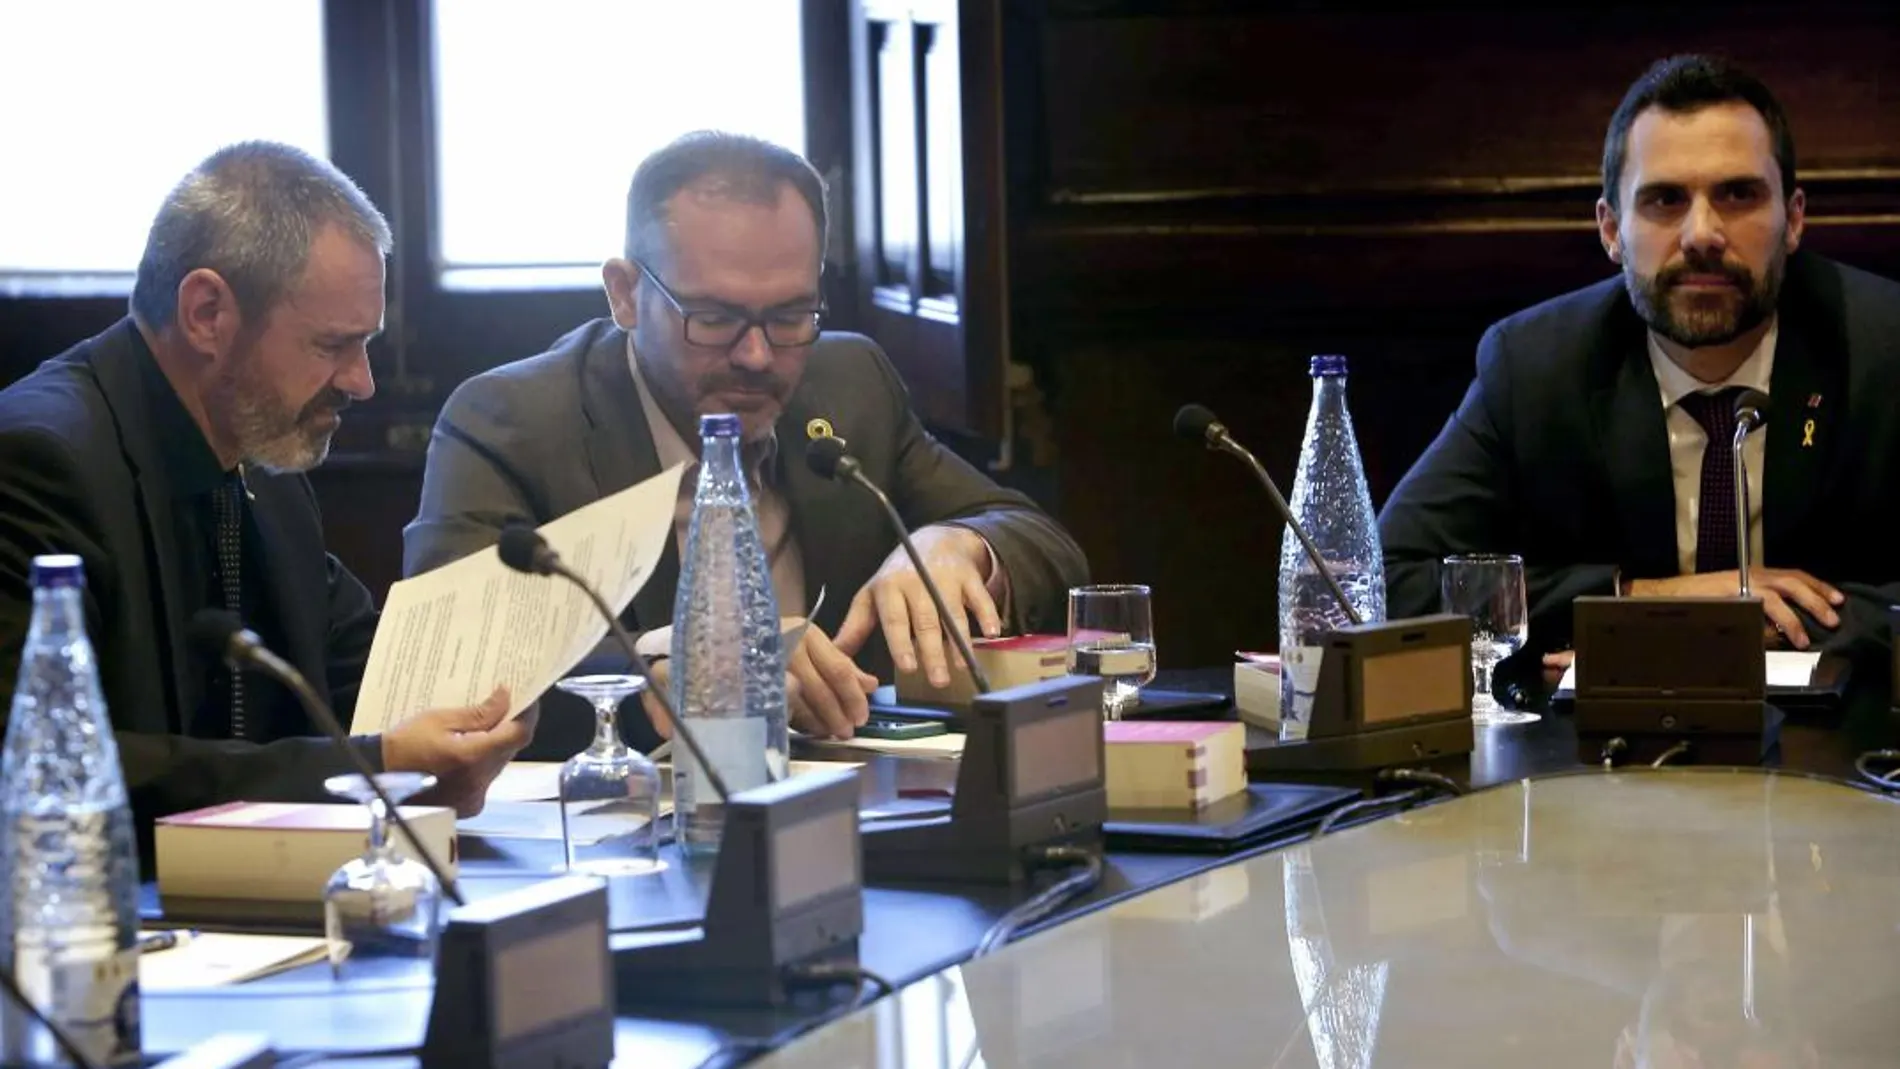 El presidente de la cámara catalana Roger Torrent, junto al vicepresidente primero Josep Costa, y al secretario primero, Eusebi Cambdepadros, al inicio dela reunión de la Mesa del Parlament celebrada antes del inicio del pleno. Foto/ Efe